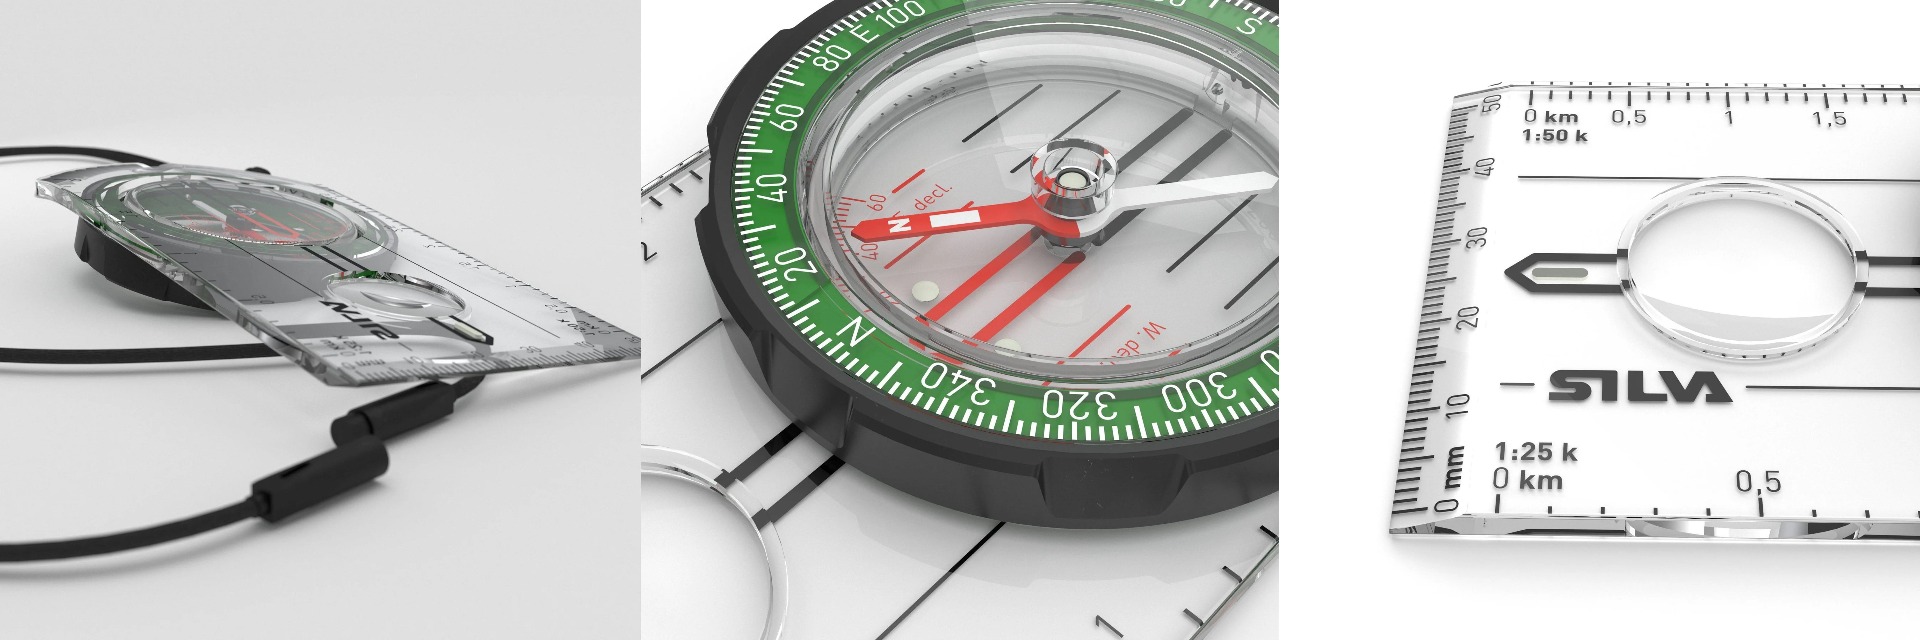 Silva Ranger kartni kompas je vrhunski pripomoček za orientacijo na terenu. S točno natančnostjo in vzdržljivostjo, vam bo kompas omogočil učinkovito navigacijo v naravi. Pridobite svoj kakovosten kompas danes!